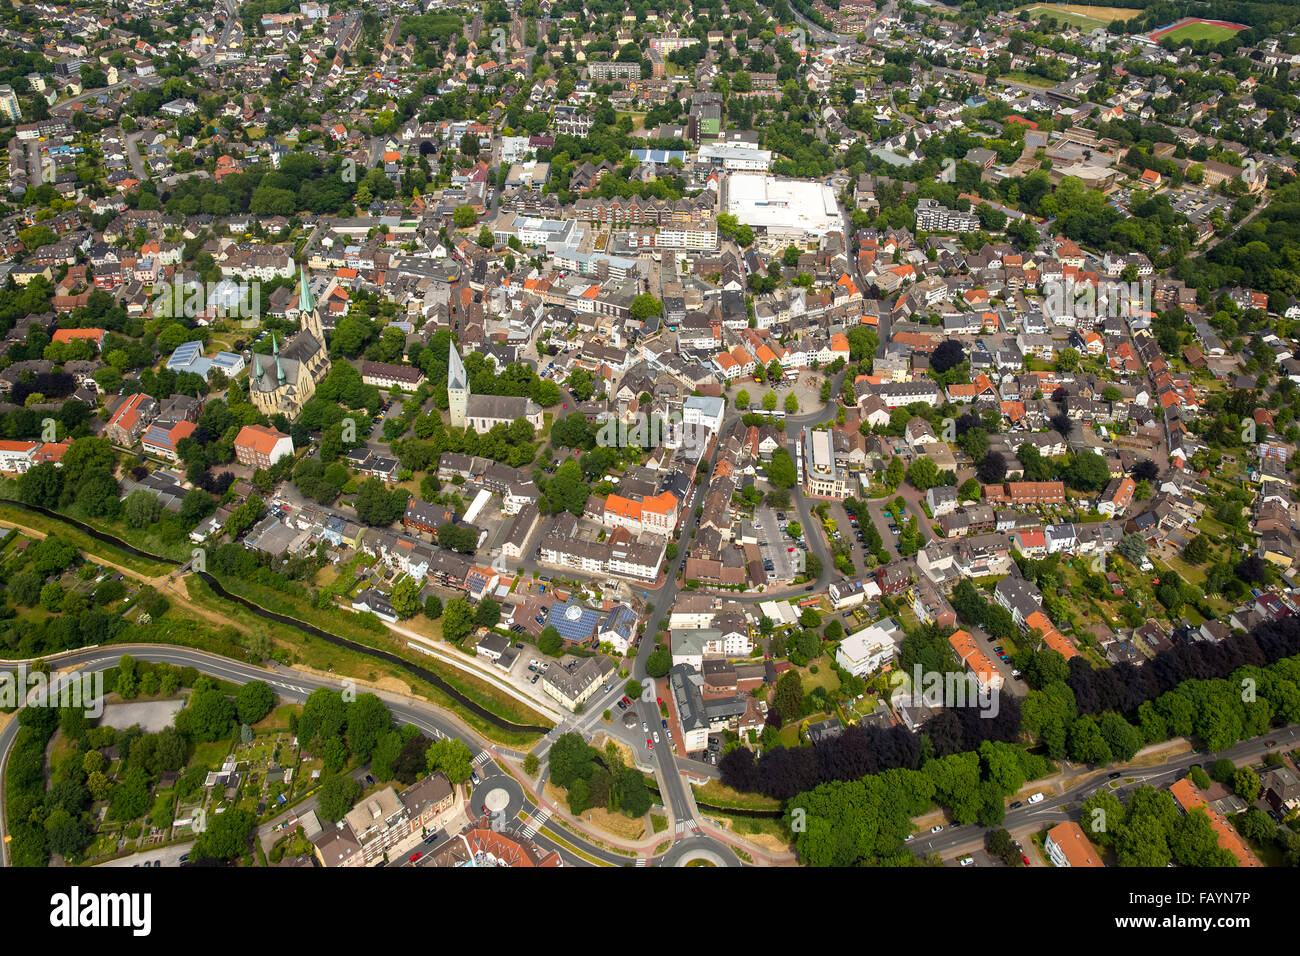 Vista aerea, che si affaccia sul centro storico di Kamen Kamen, zona della Ruhr, Renania settentrionale-Vestfalia, Germania, vista aerea, Foto Stock